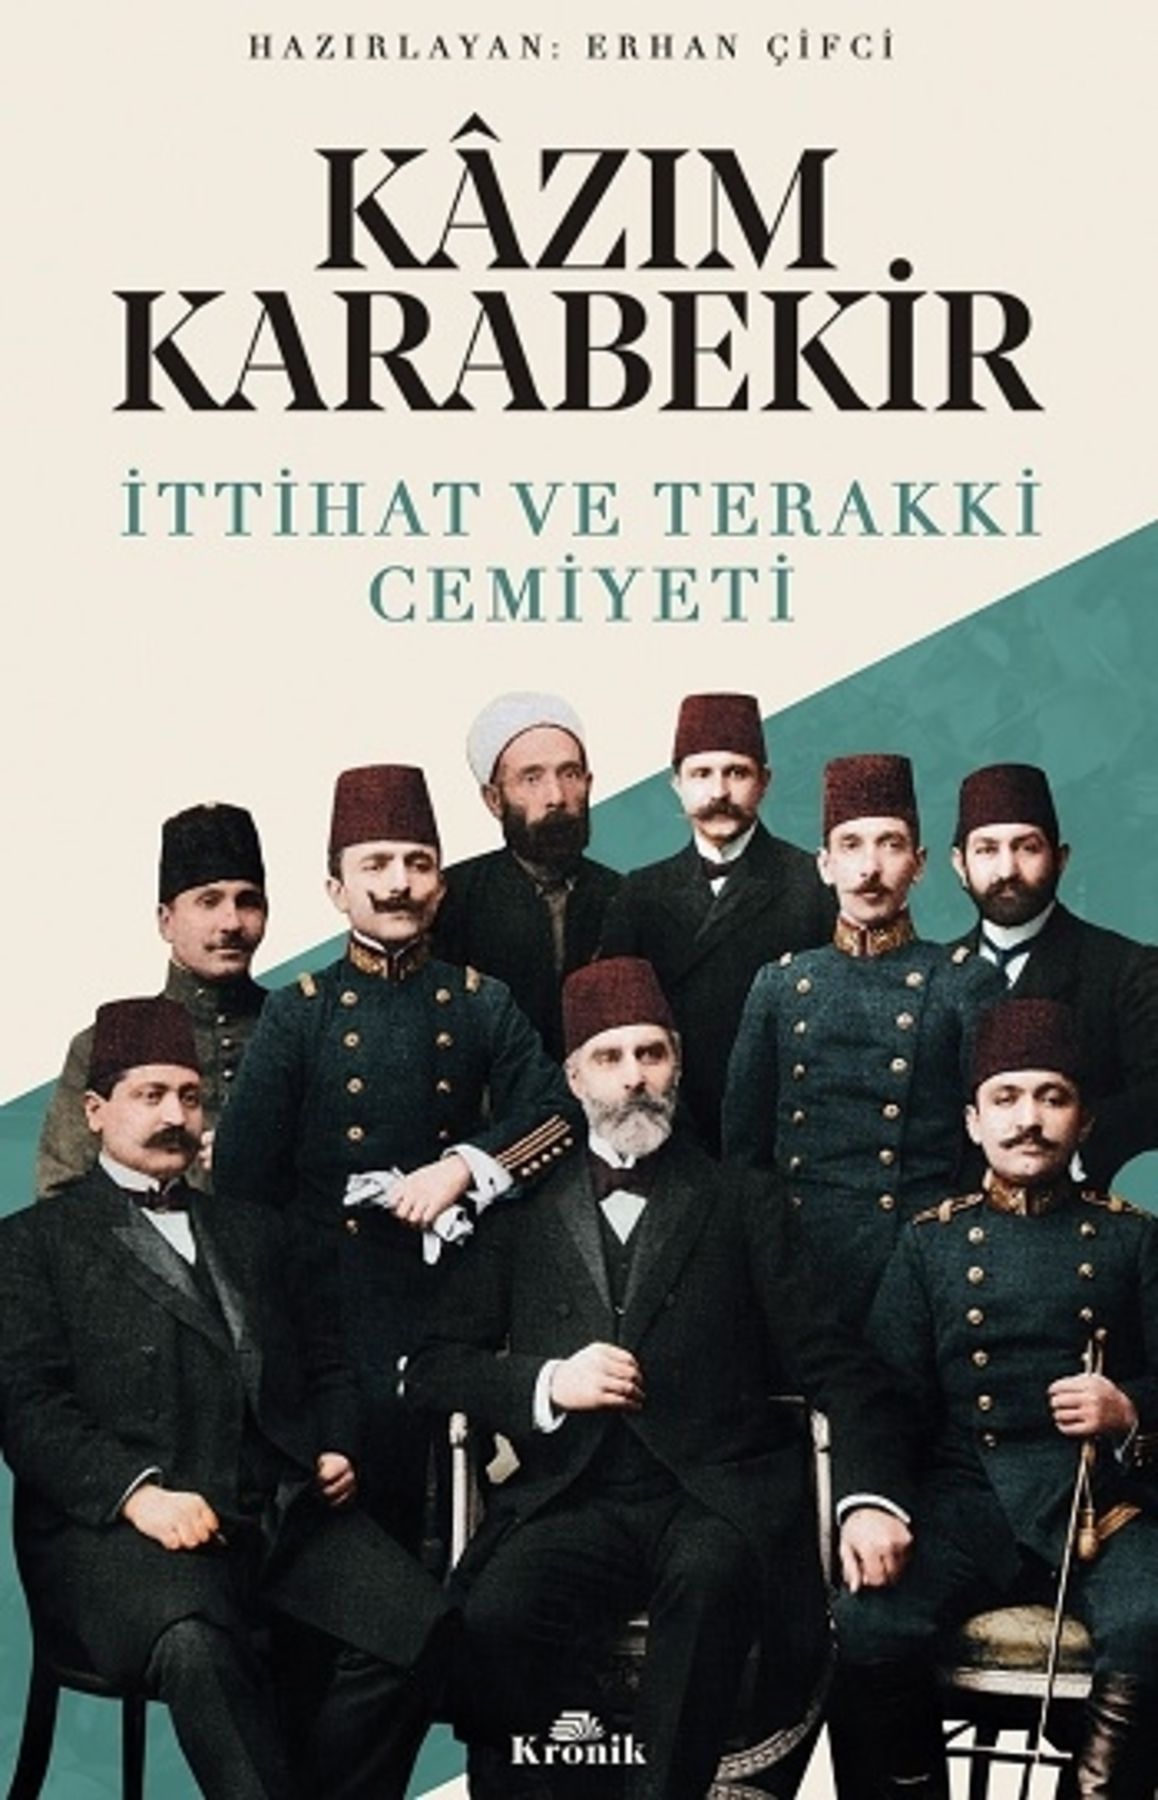 Kronik Kitap Kazım Karabekir - Ittihat Ve Terakki Cemiyeti